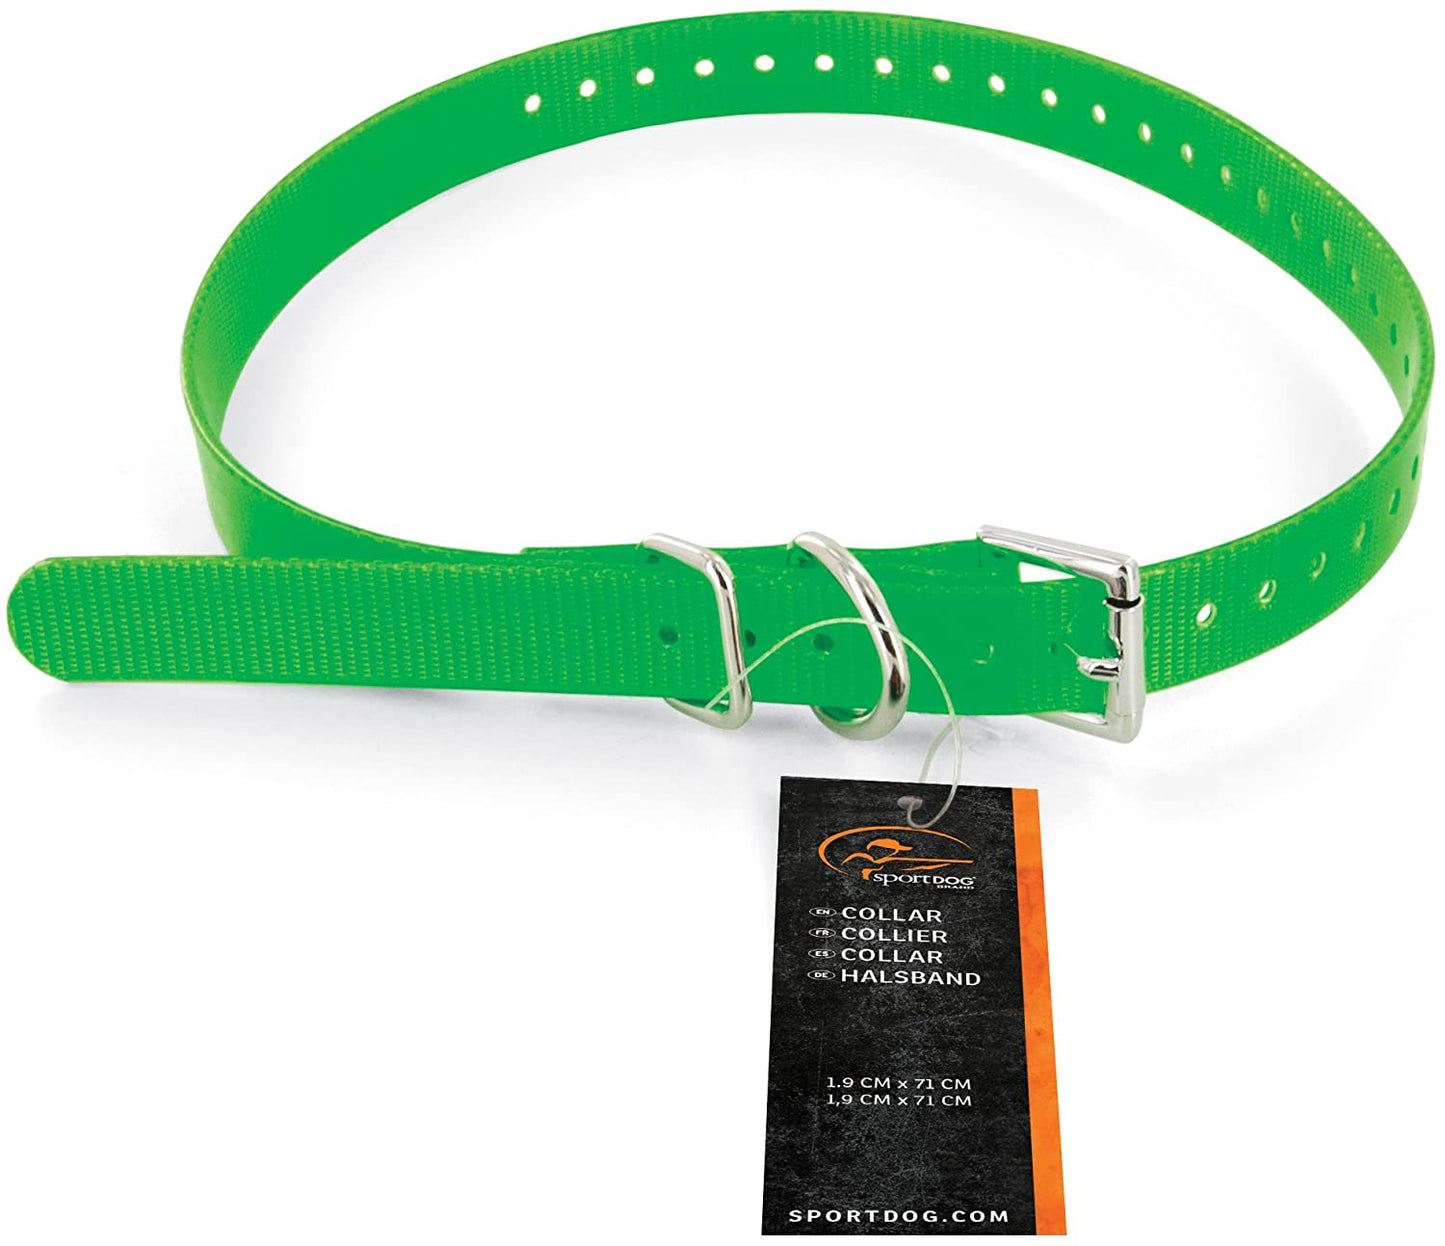 SportDOG 3/4" Collar Strap, Green - SAC30-13321